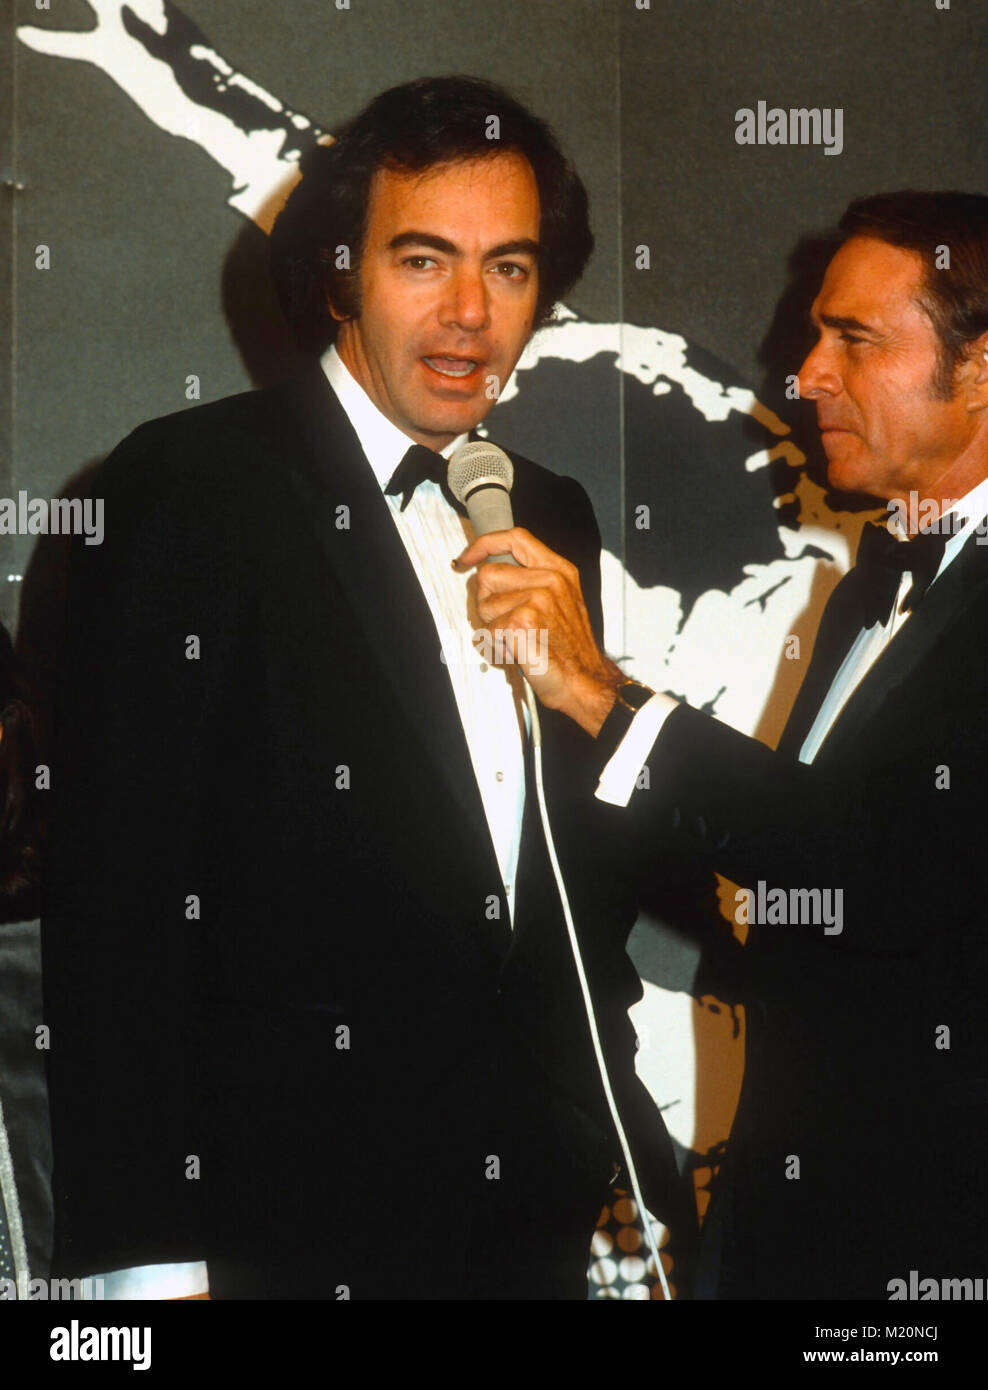 LOS ANGELES, CA - le 17 décembre : la chanteuse Neil Diamond arrive à la chanteuse de jazz création le 17 décembre 1980 à Los Angeles, Californie. Photo de Barry King/Alamy Stock Photo Banque D'Images